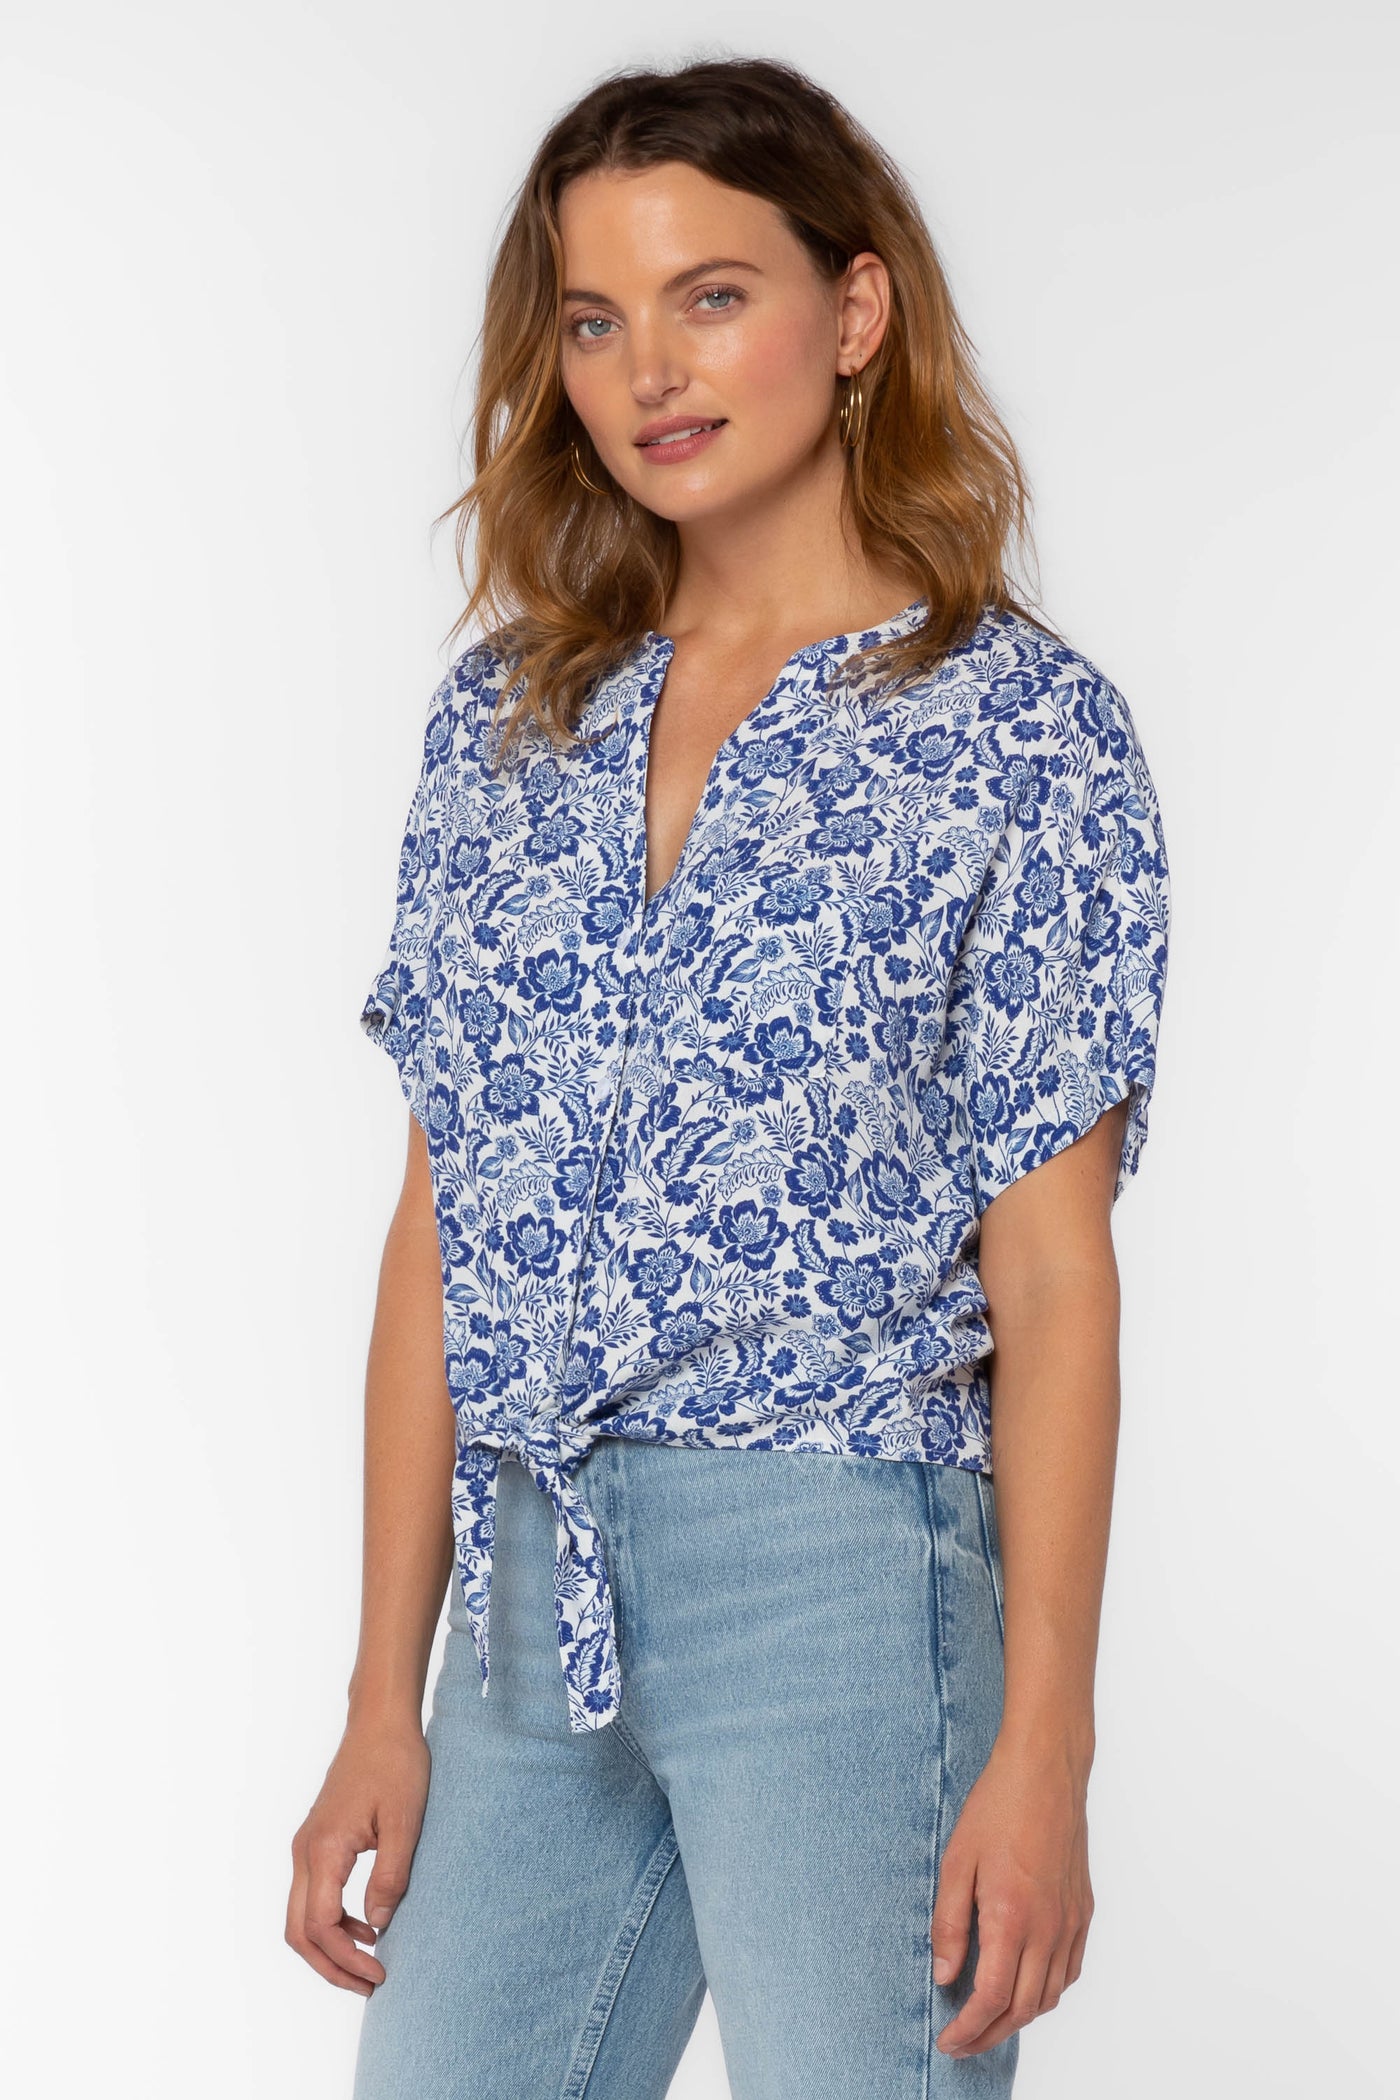 Shelby Blue Floral Shirt - Tops - Velvet Heart Clothing